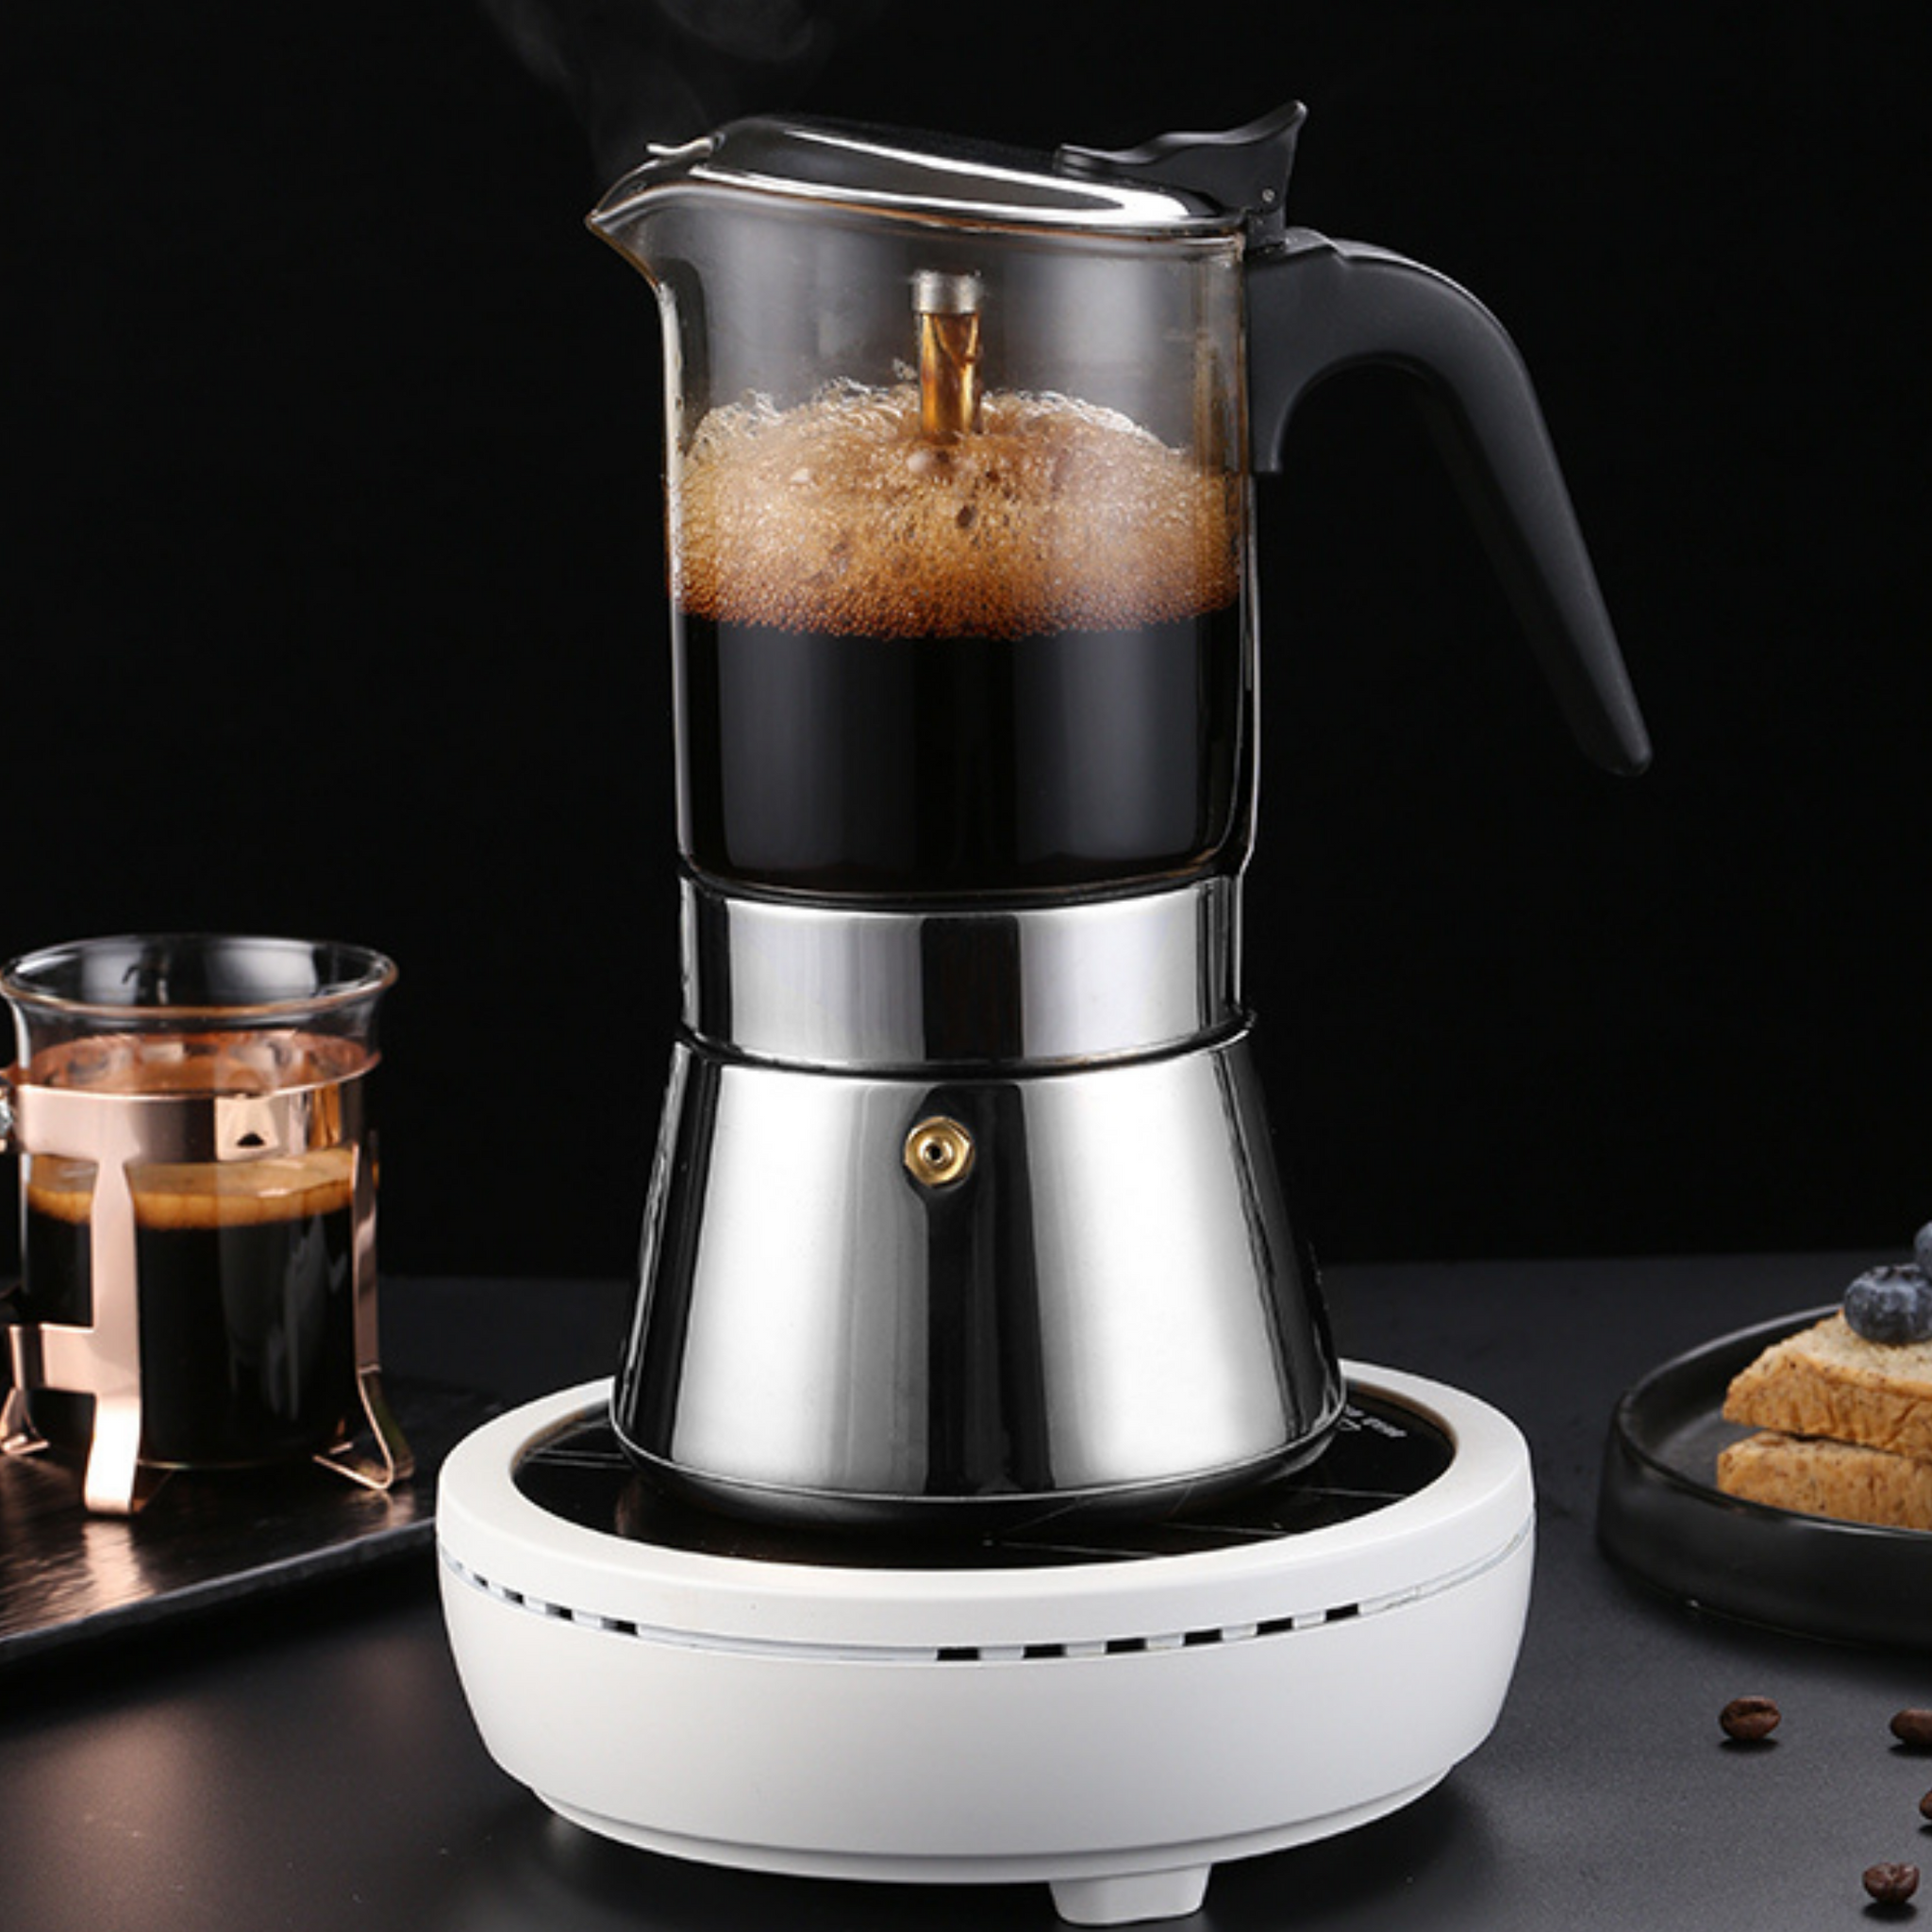 Primula Classic Stovetop Espresso and Coffee Maker, Moka Pot for Itali –  J'ouvert Coffee